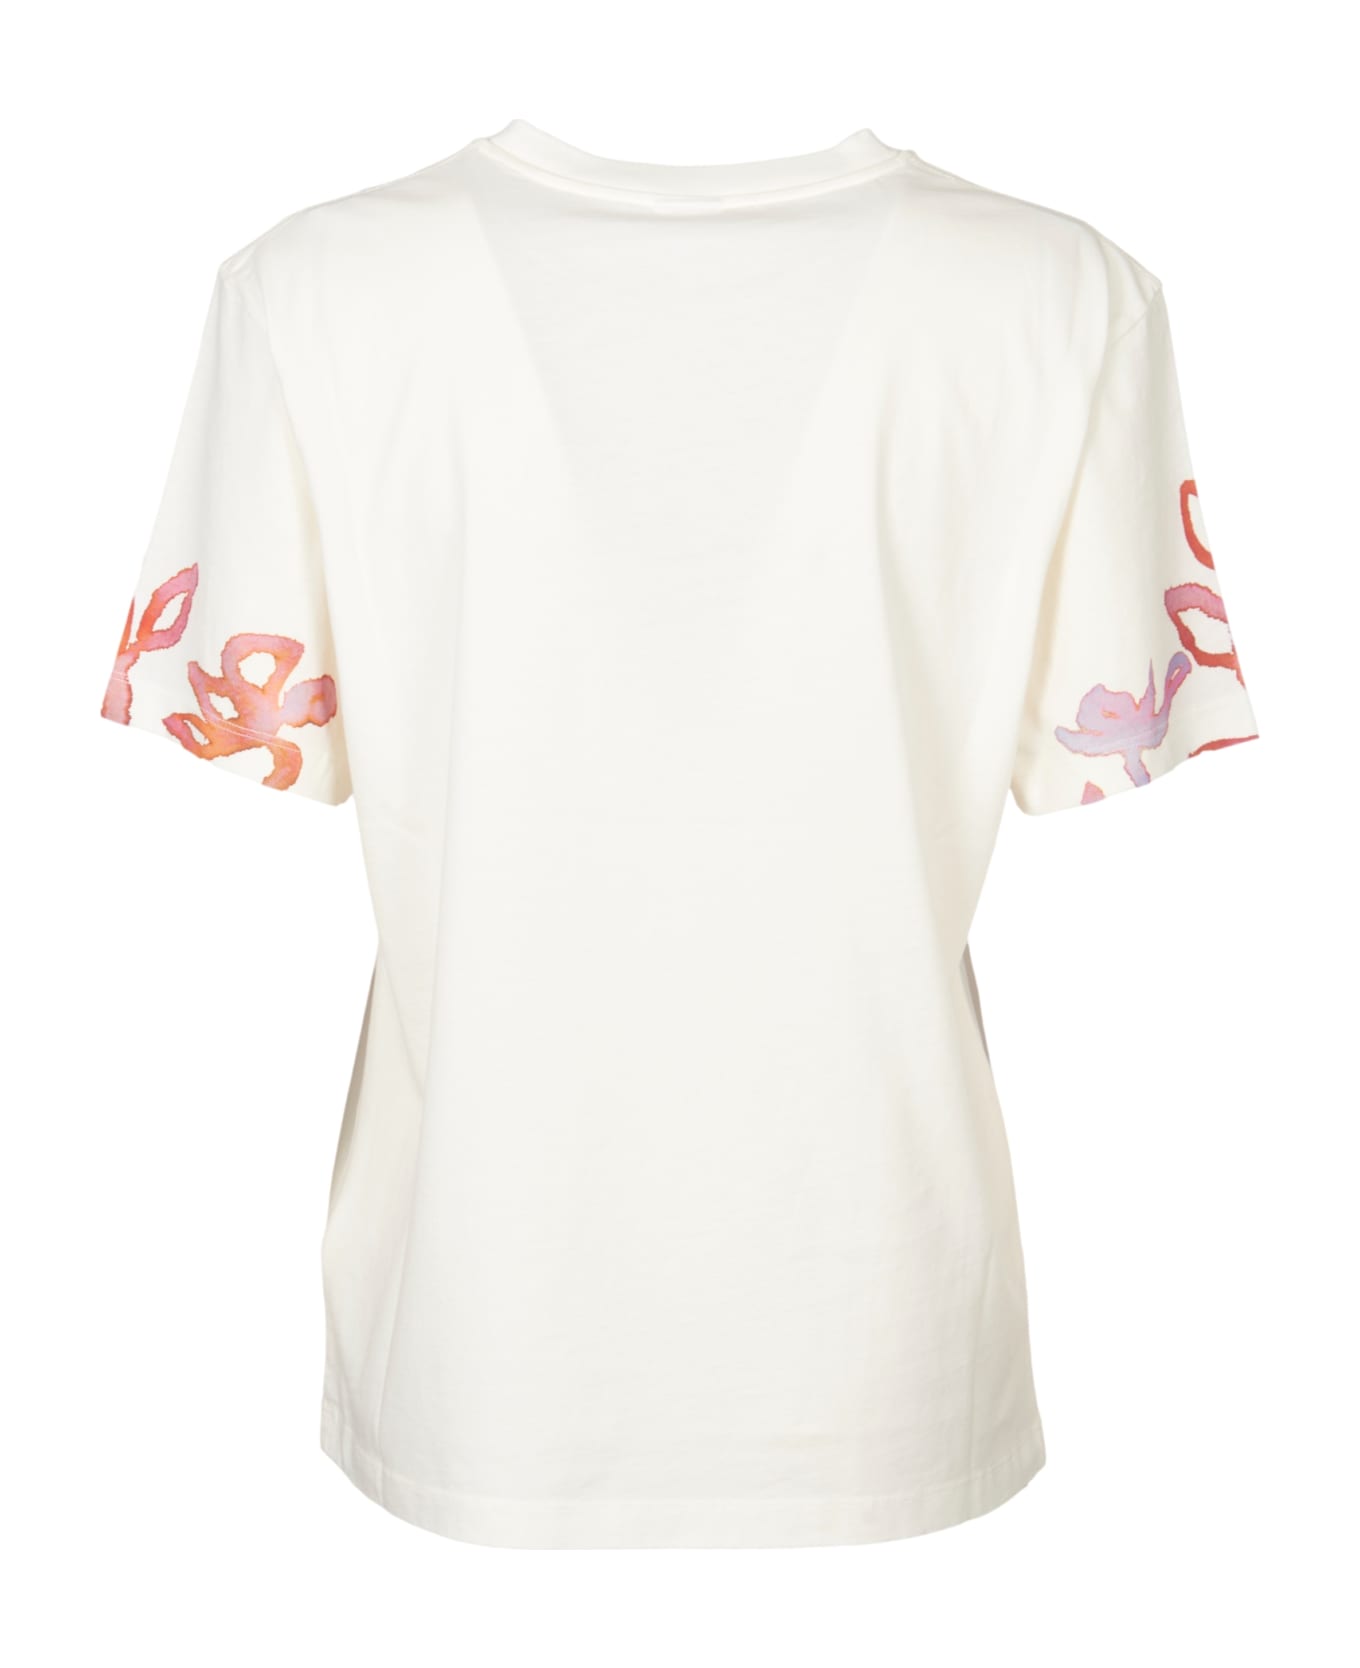 Paul Smith T-shirt - Cream Tシャツ